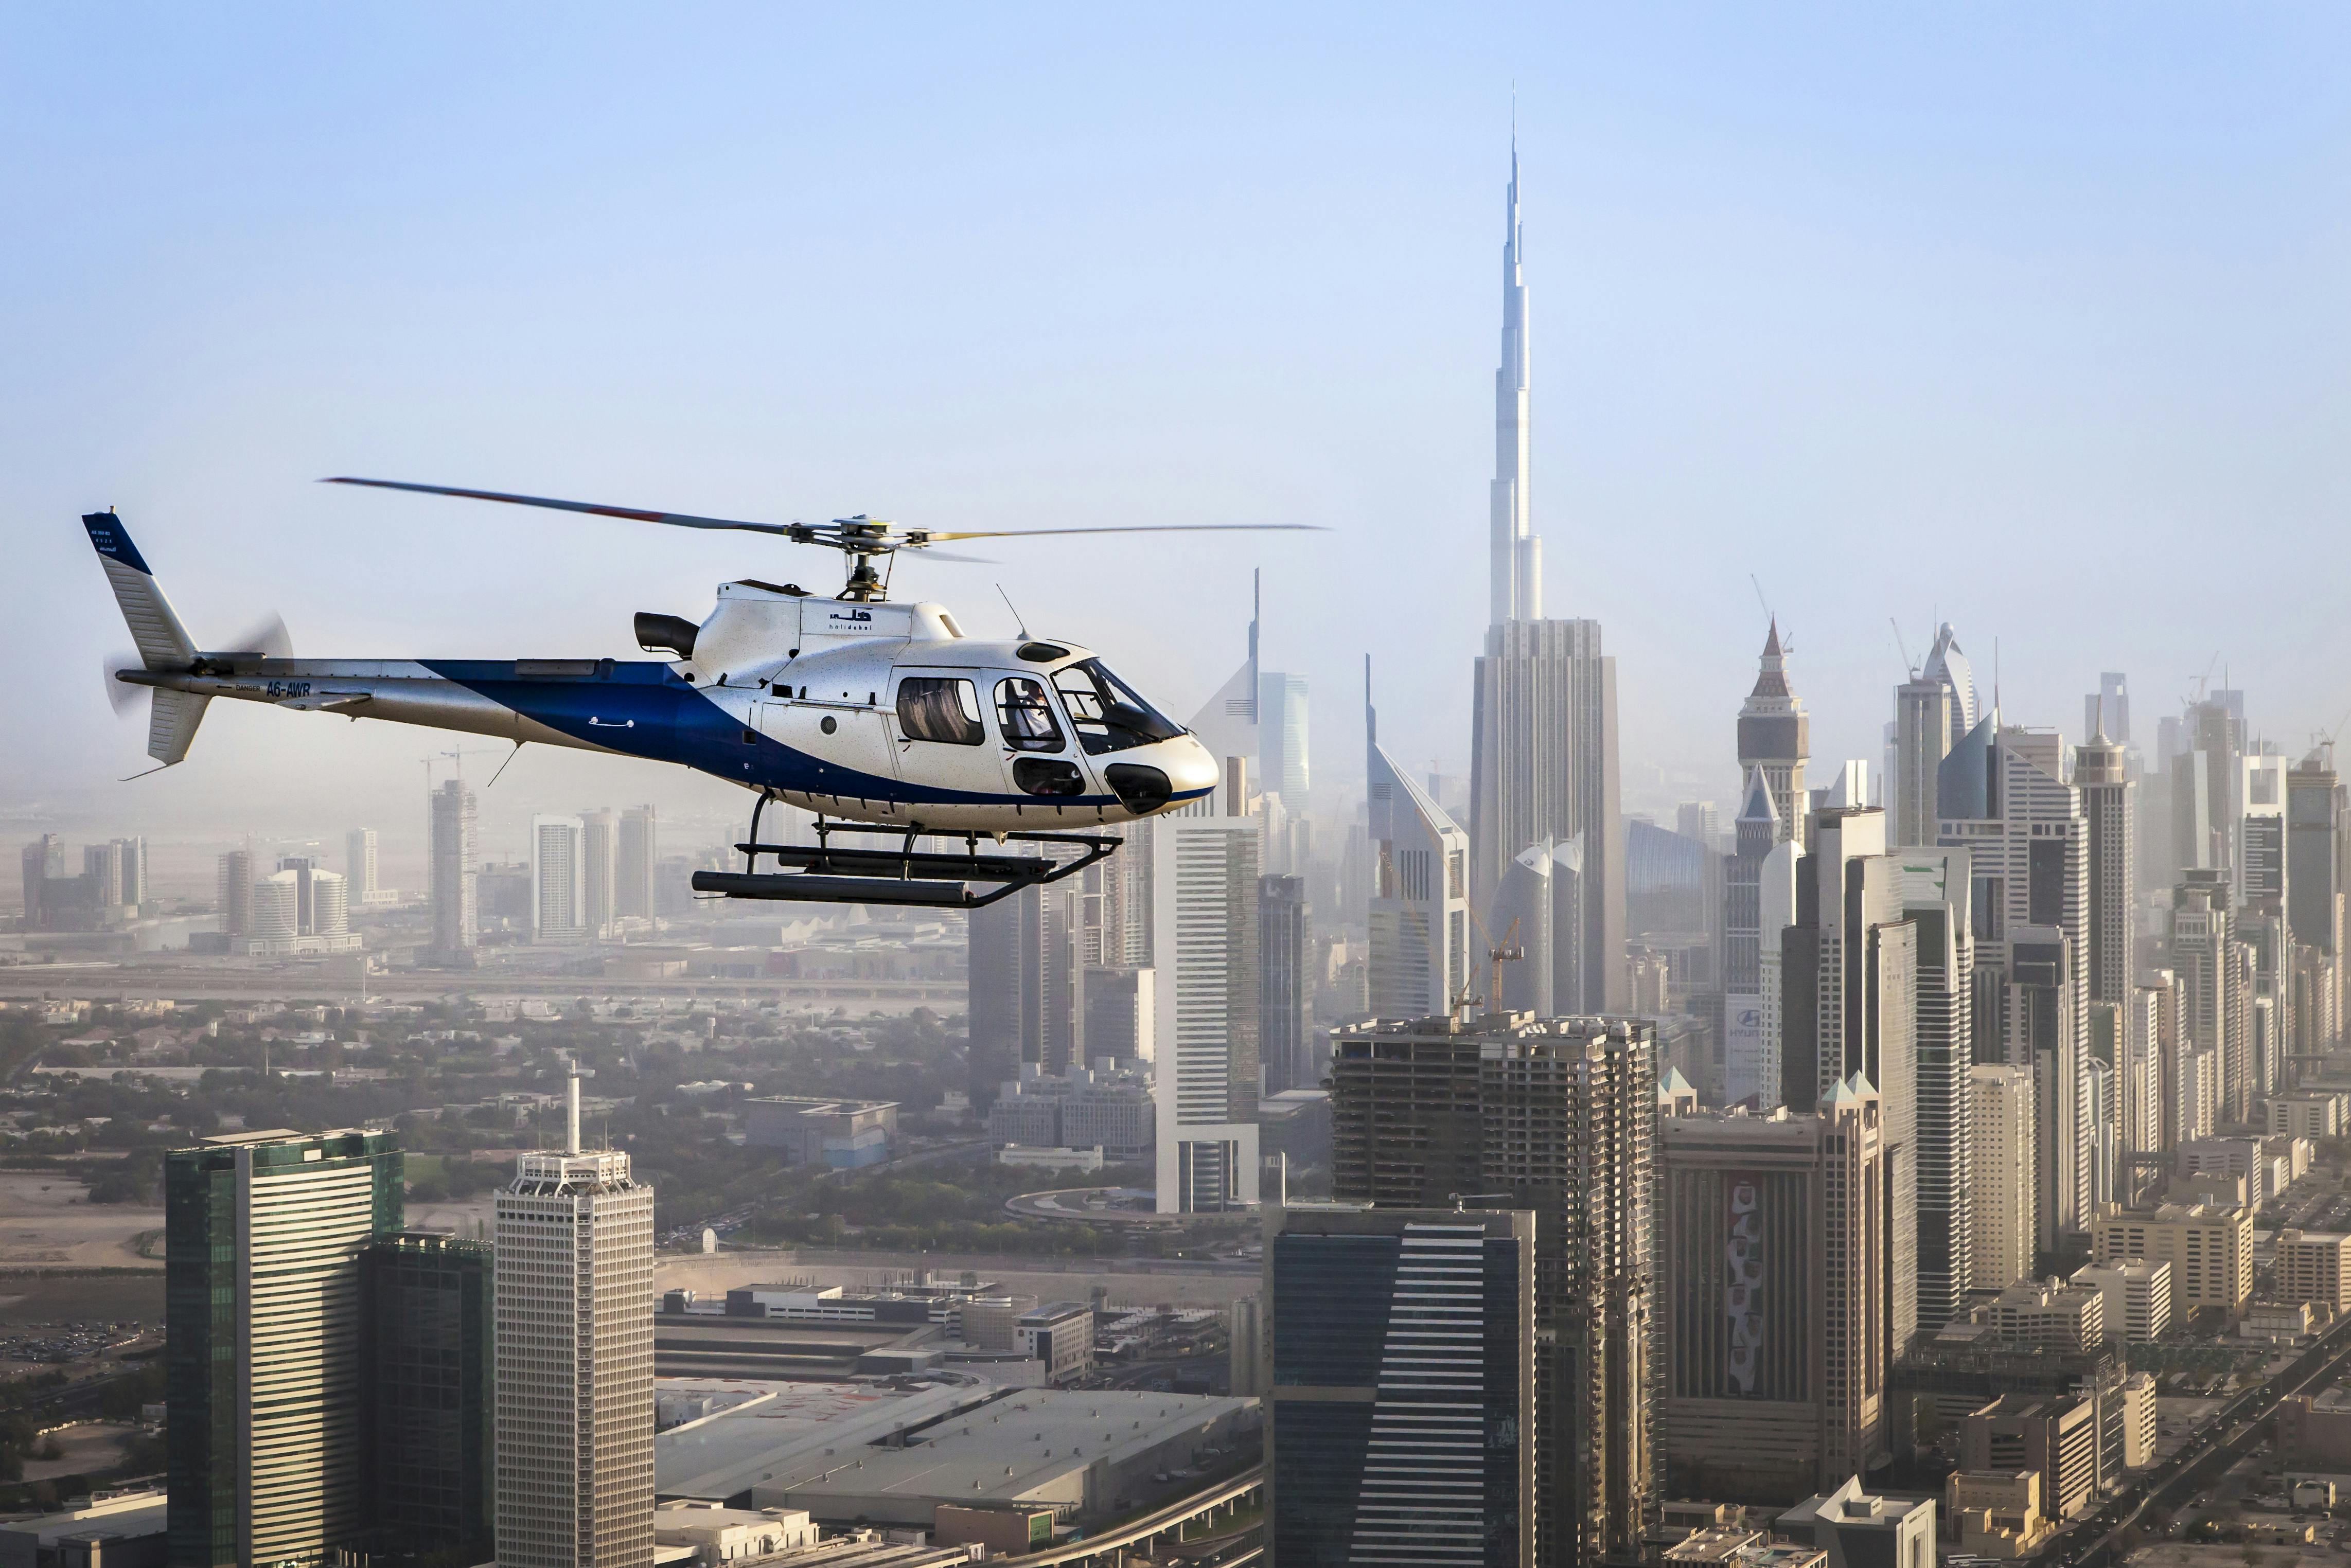 12-minütige Helikoptertour über Dubai